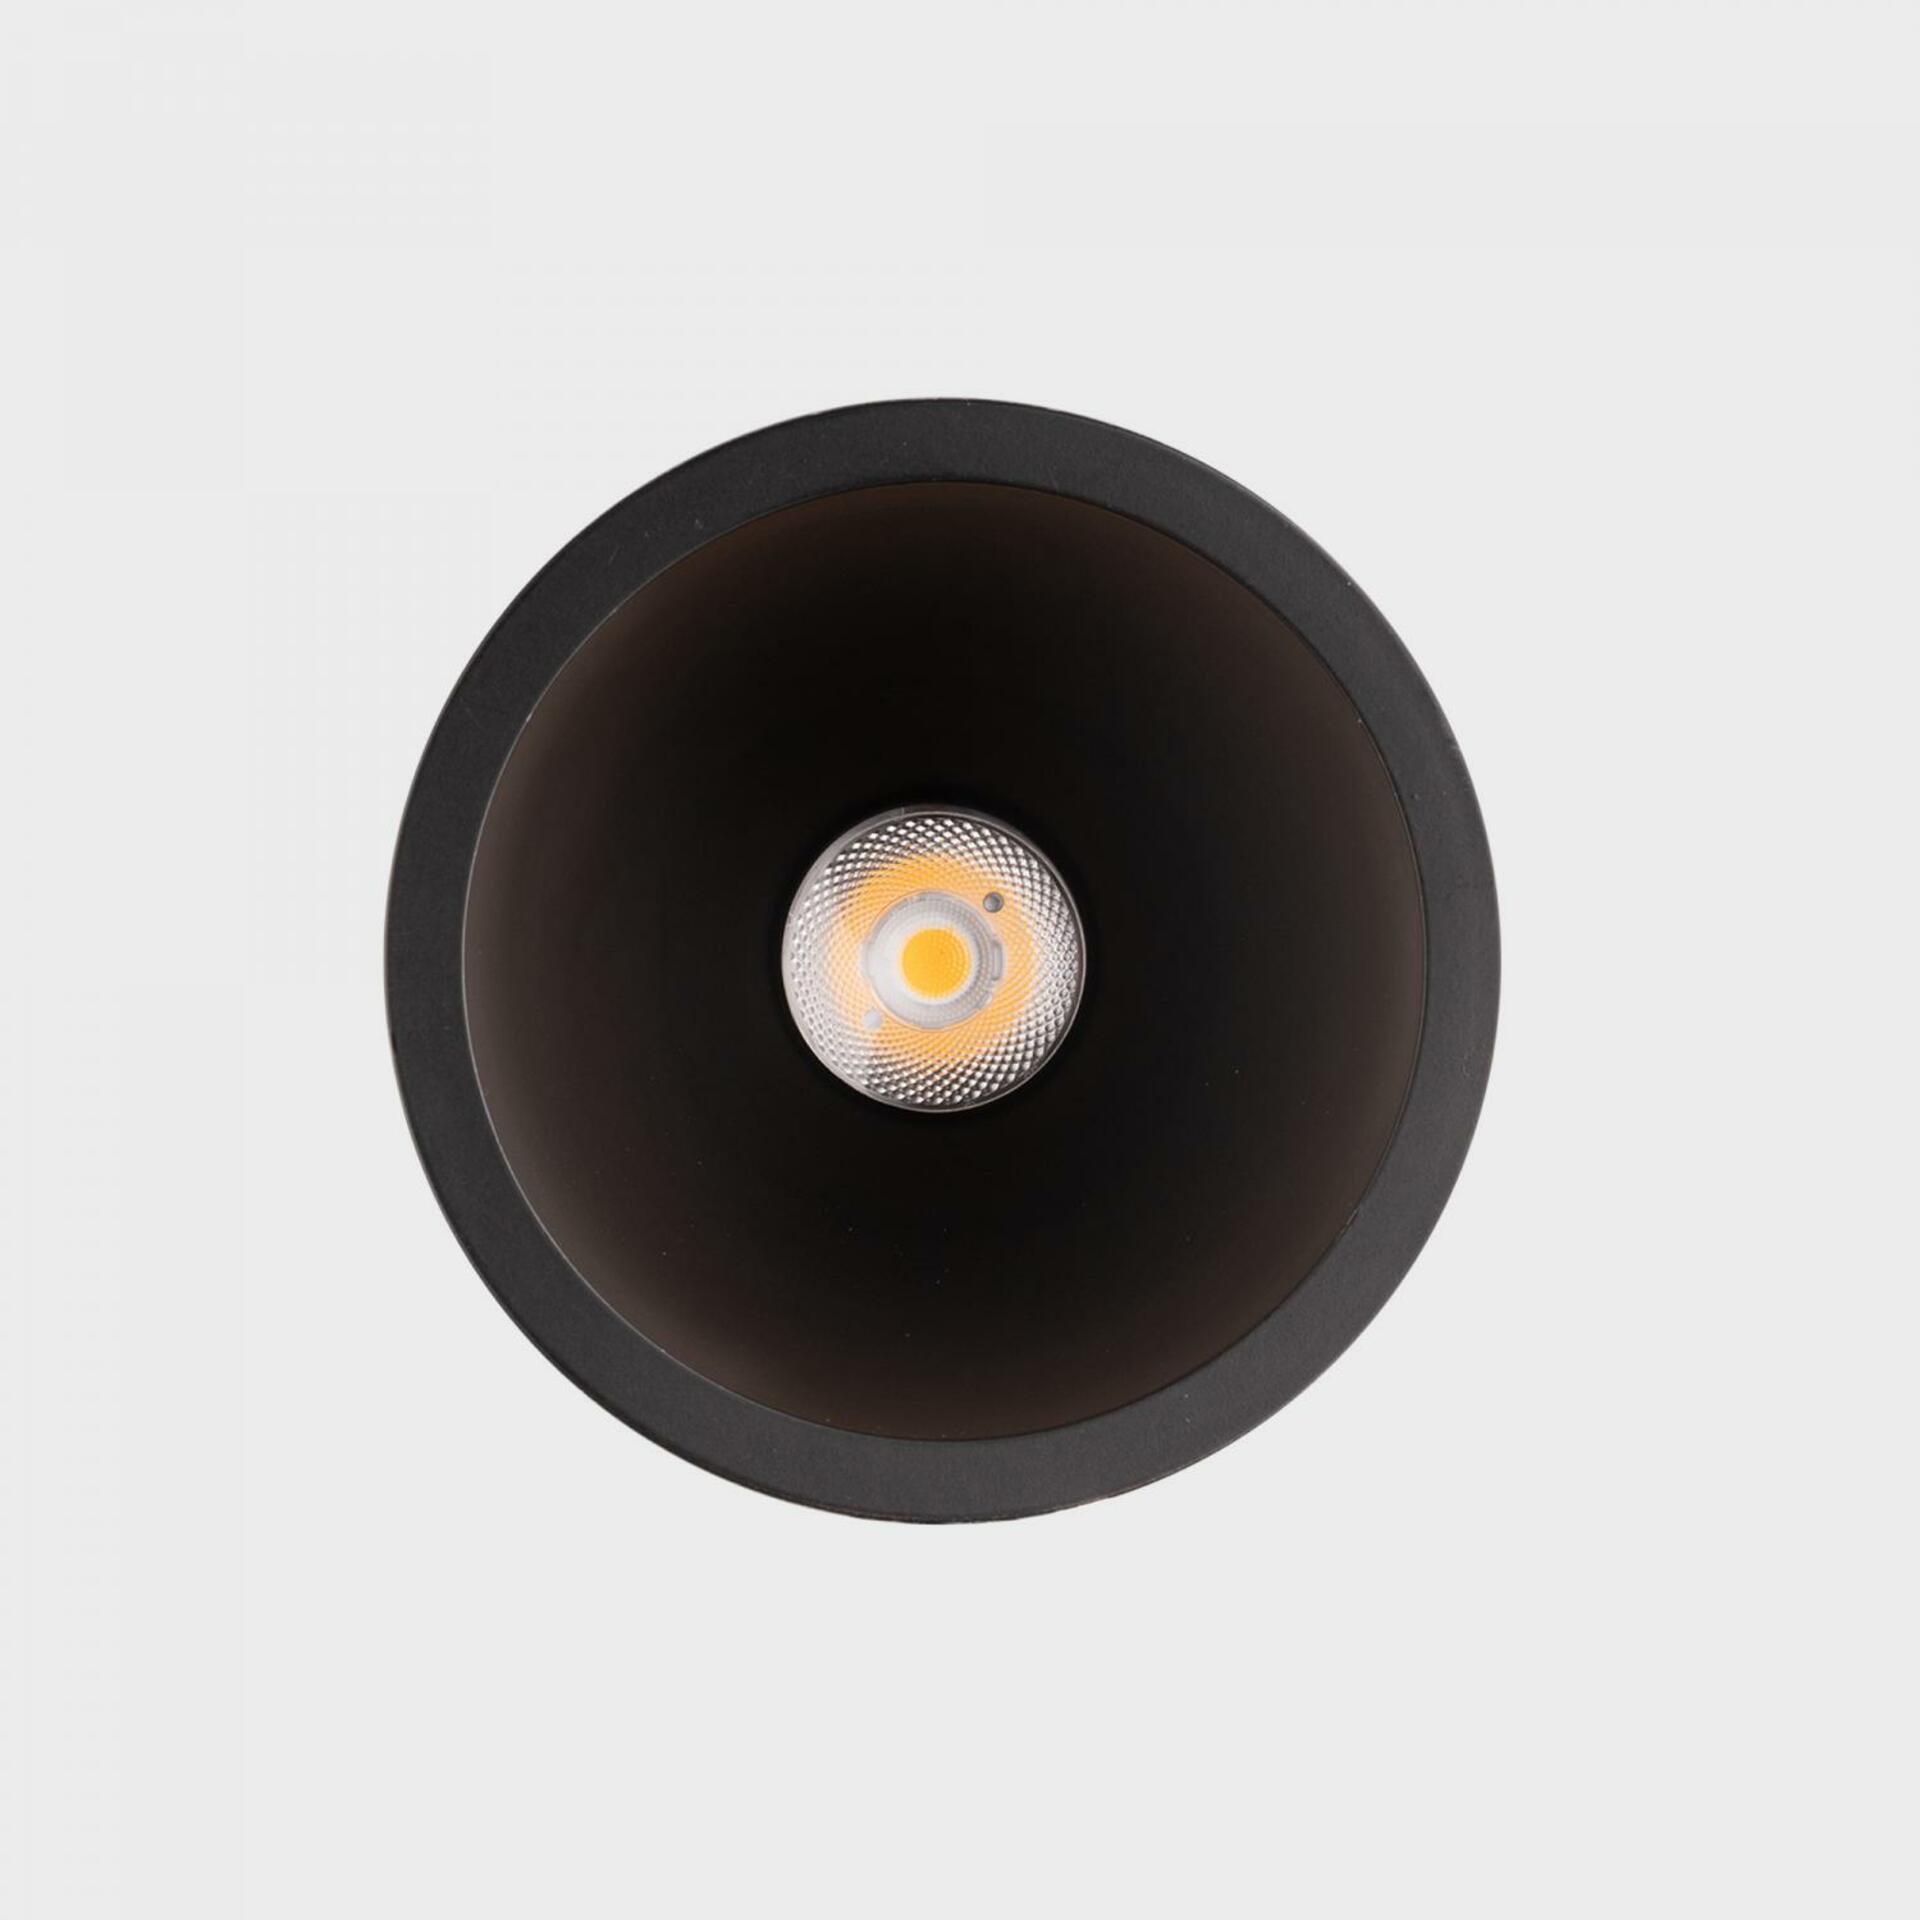 KOHL LIGHTING KOHL-Lighting NOON zapuštěné svítidlo s rámečkem pr.93 mm černá 38° 10 W  CRI 80 3000K PHASE CUT